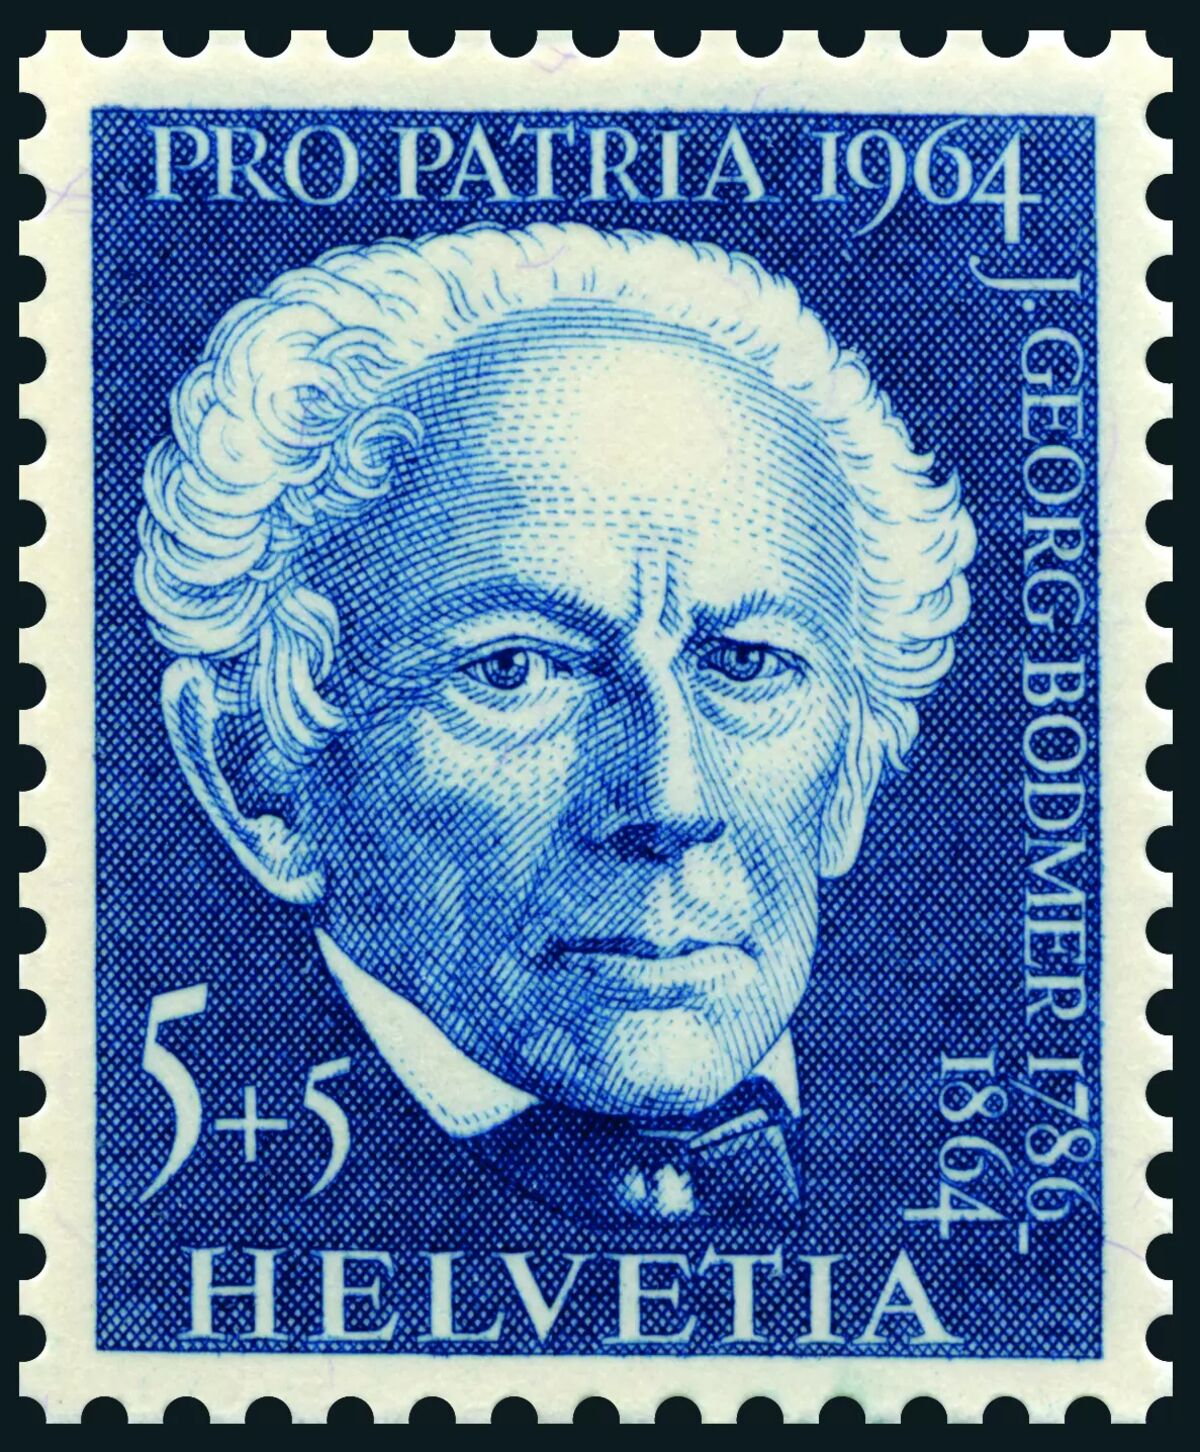 GFD 1/215: Briefmarke zum 100. Todesjahr von Johann Georg Bodmer, 1964